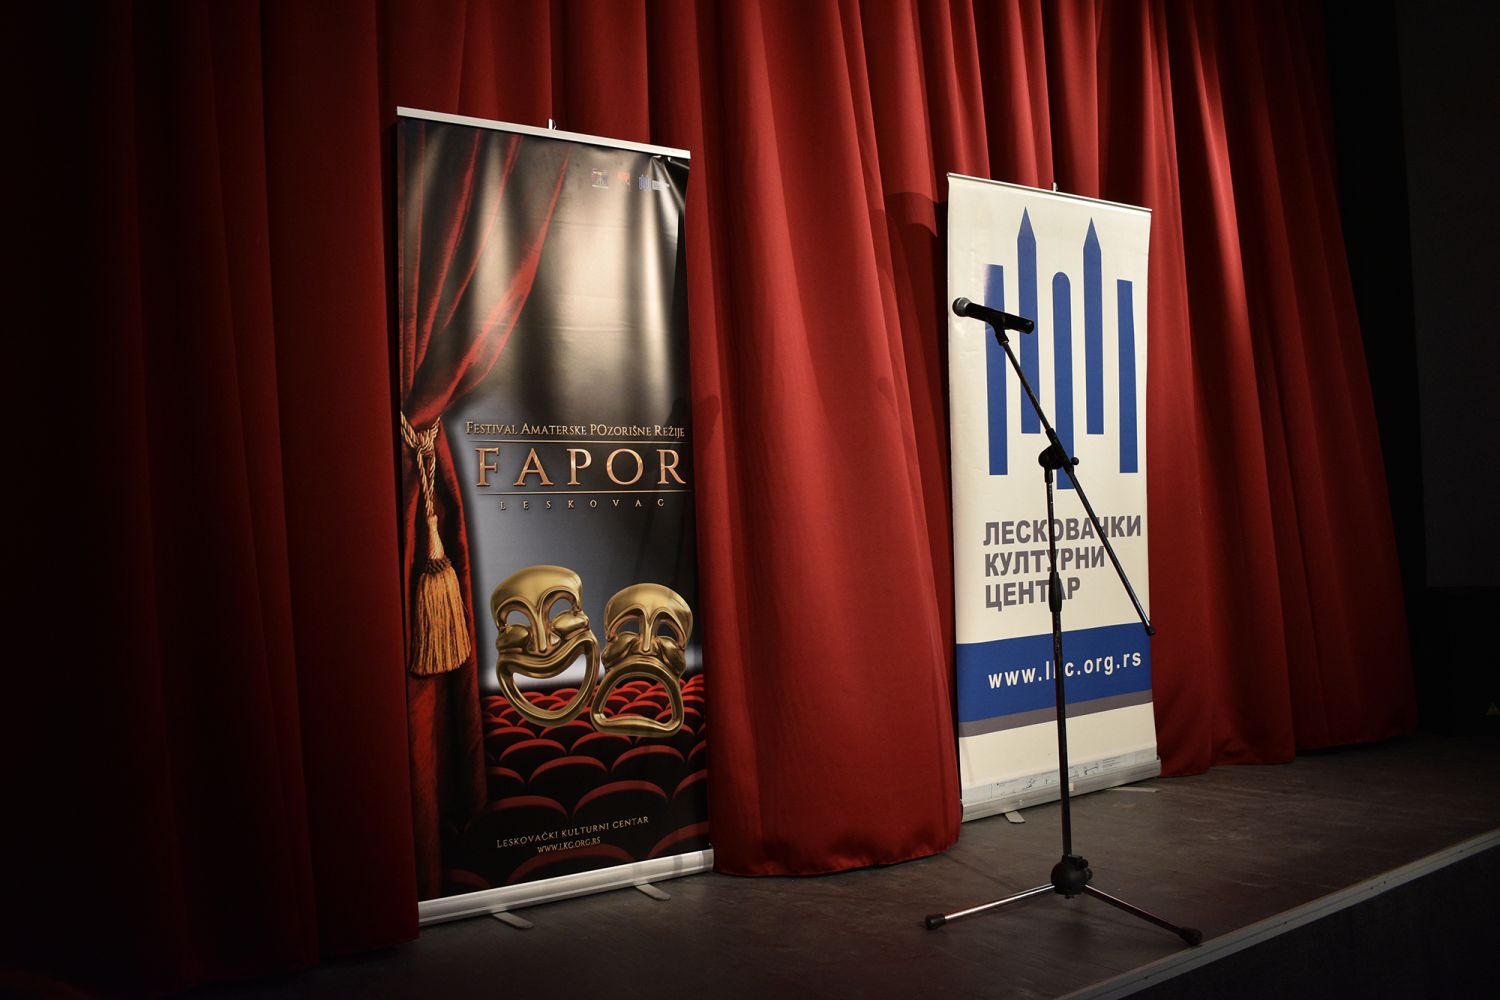 Počele prijave za FAPOR, nagrada za najboljeg reditelja 50. 000 dinara